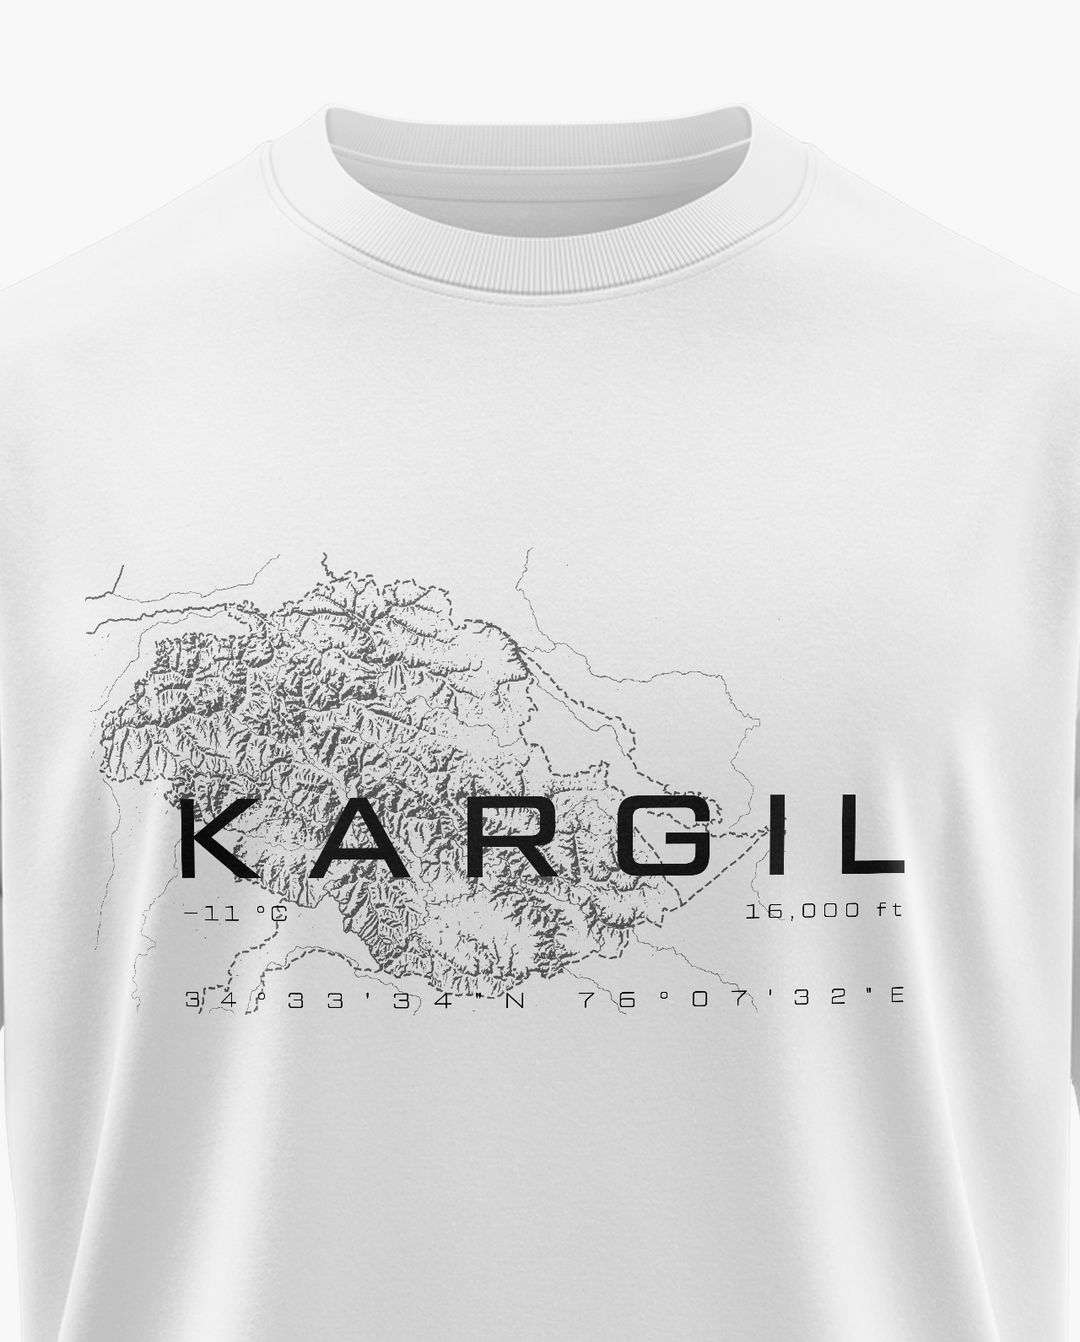 Beyond Kargil T-Shirt